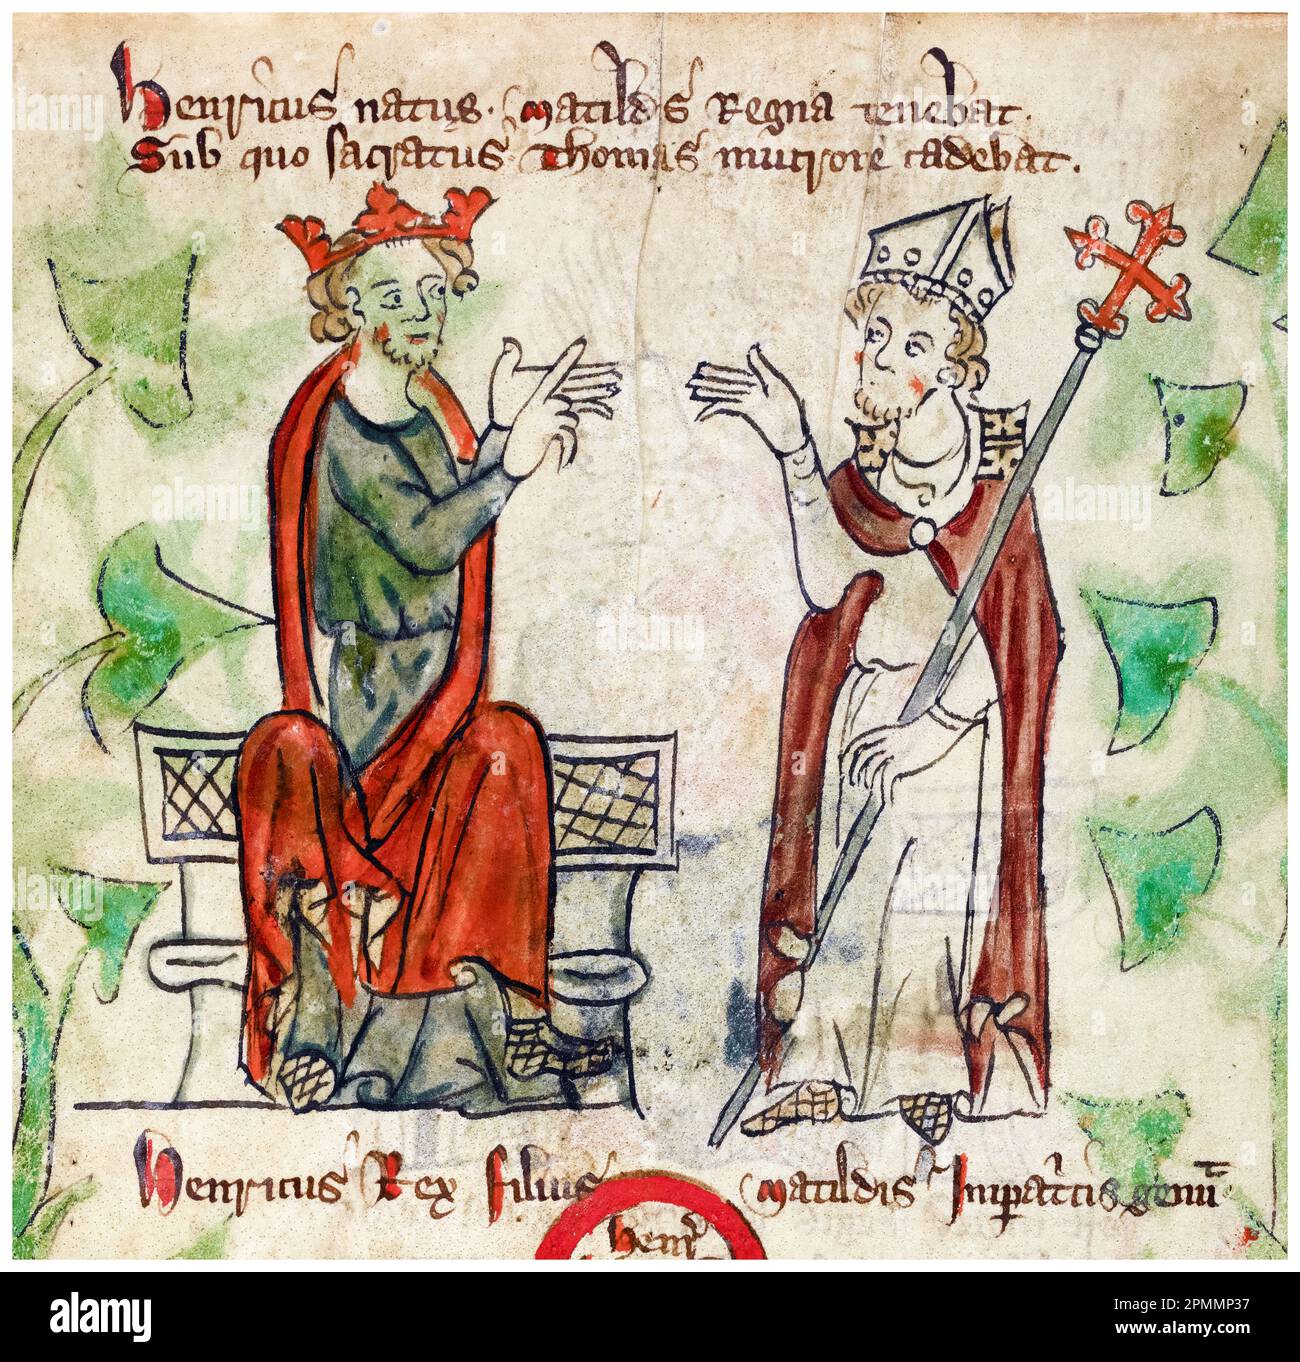 Re Enrico II d'Inghilterra (1133-1189) e Thomas Becket (1119/20-1170) Arcivescovo di Canterbury, dipinto manoscritto illuminato di Pietro di Langtoft, 1307-1327 Foto Stock